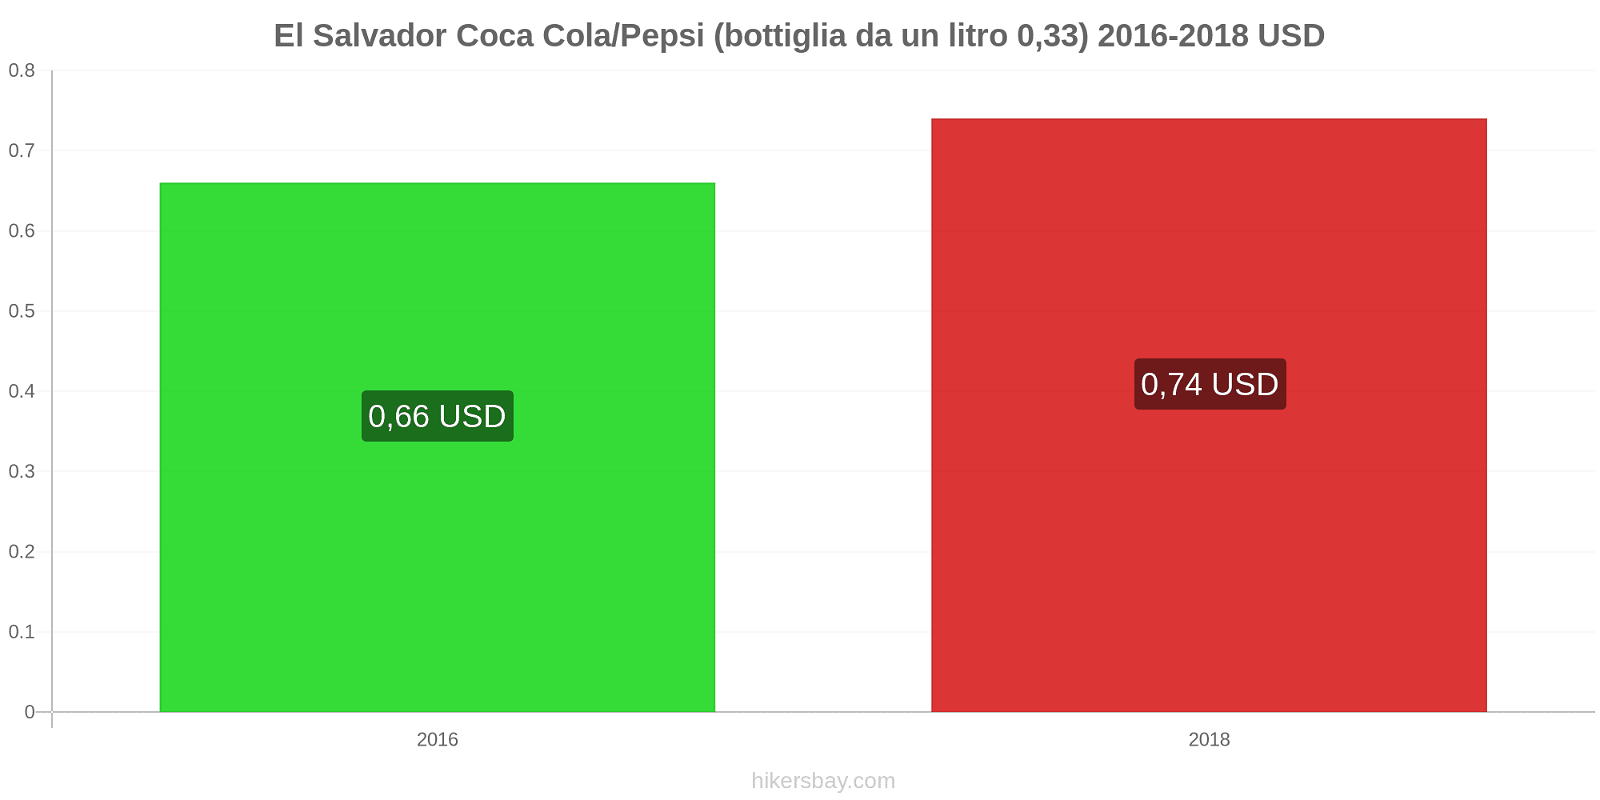 El Salvador cambi di prezzo Coca-Cola/Pepsi (bottiglia da 0.33 litri) hikersbay.com